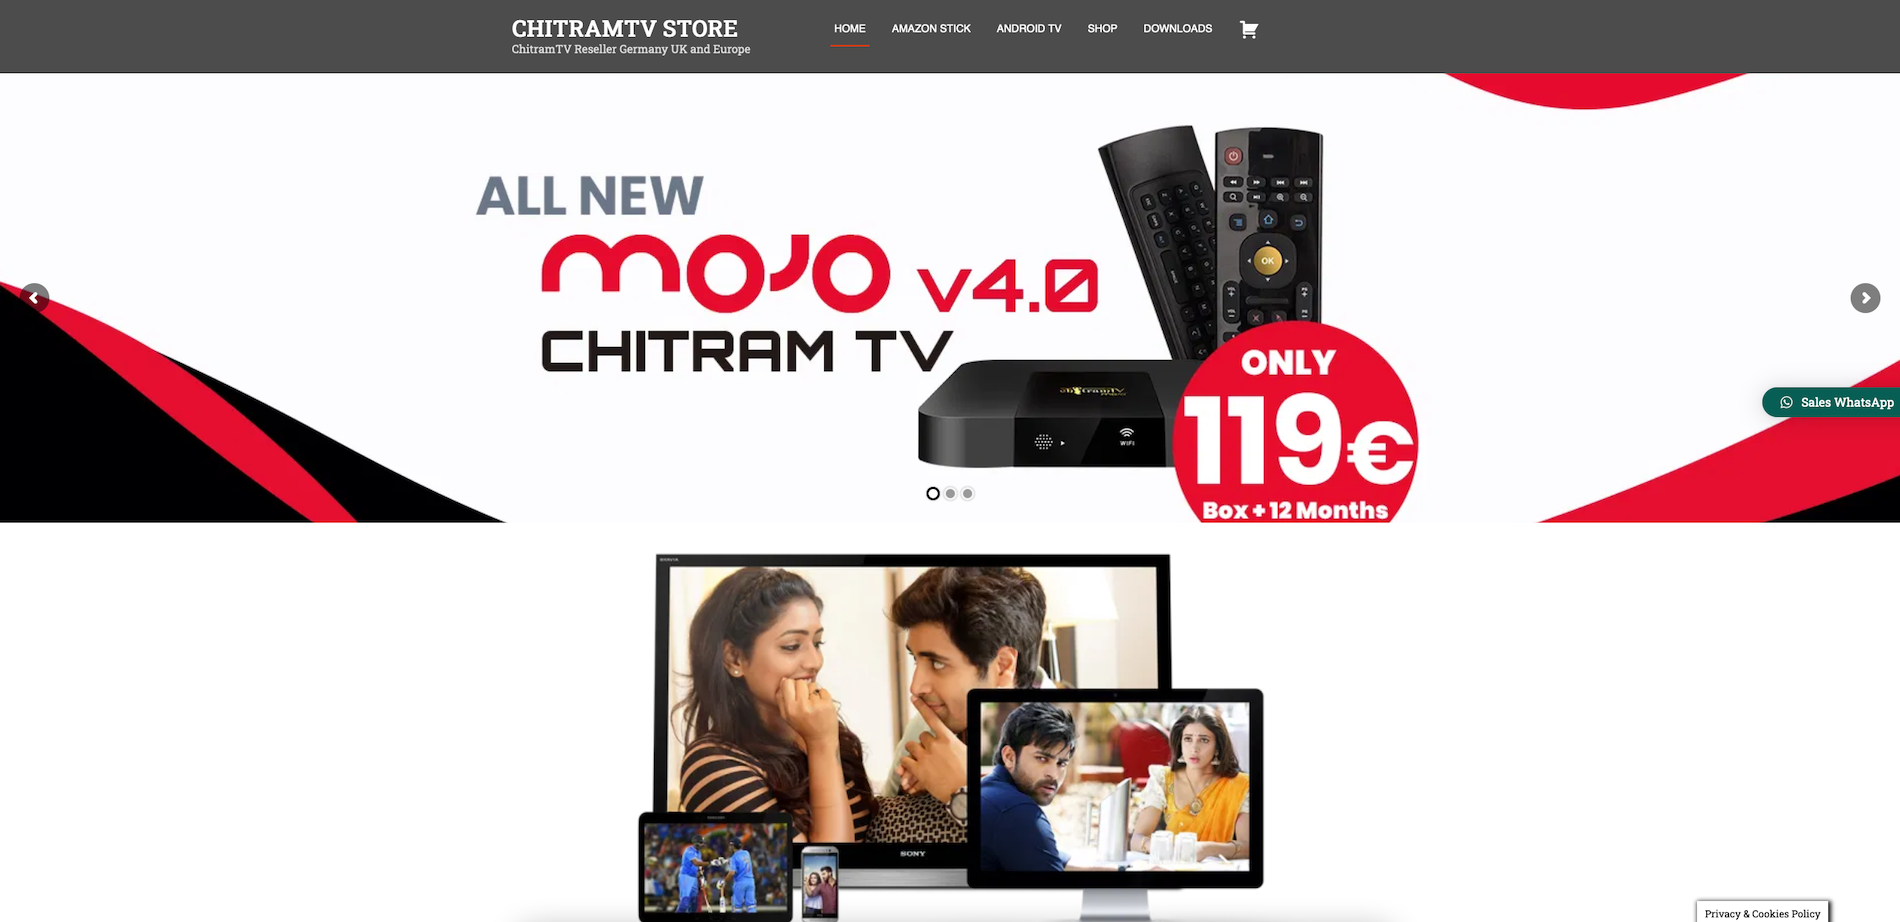 ChitramTV: Dish Network verlangt 31 Mio. USD Schadenersatz